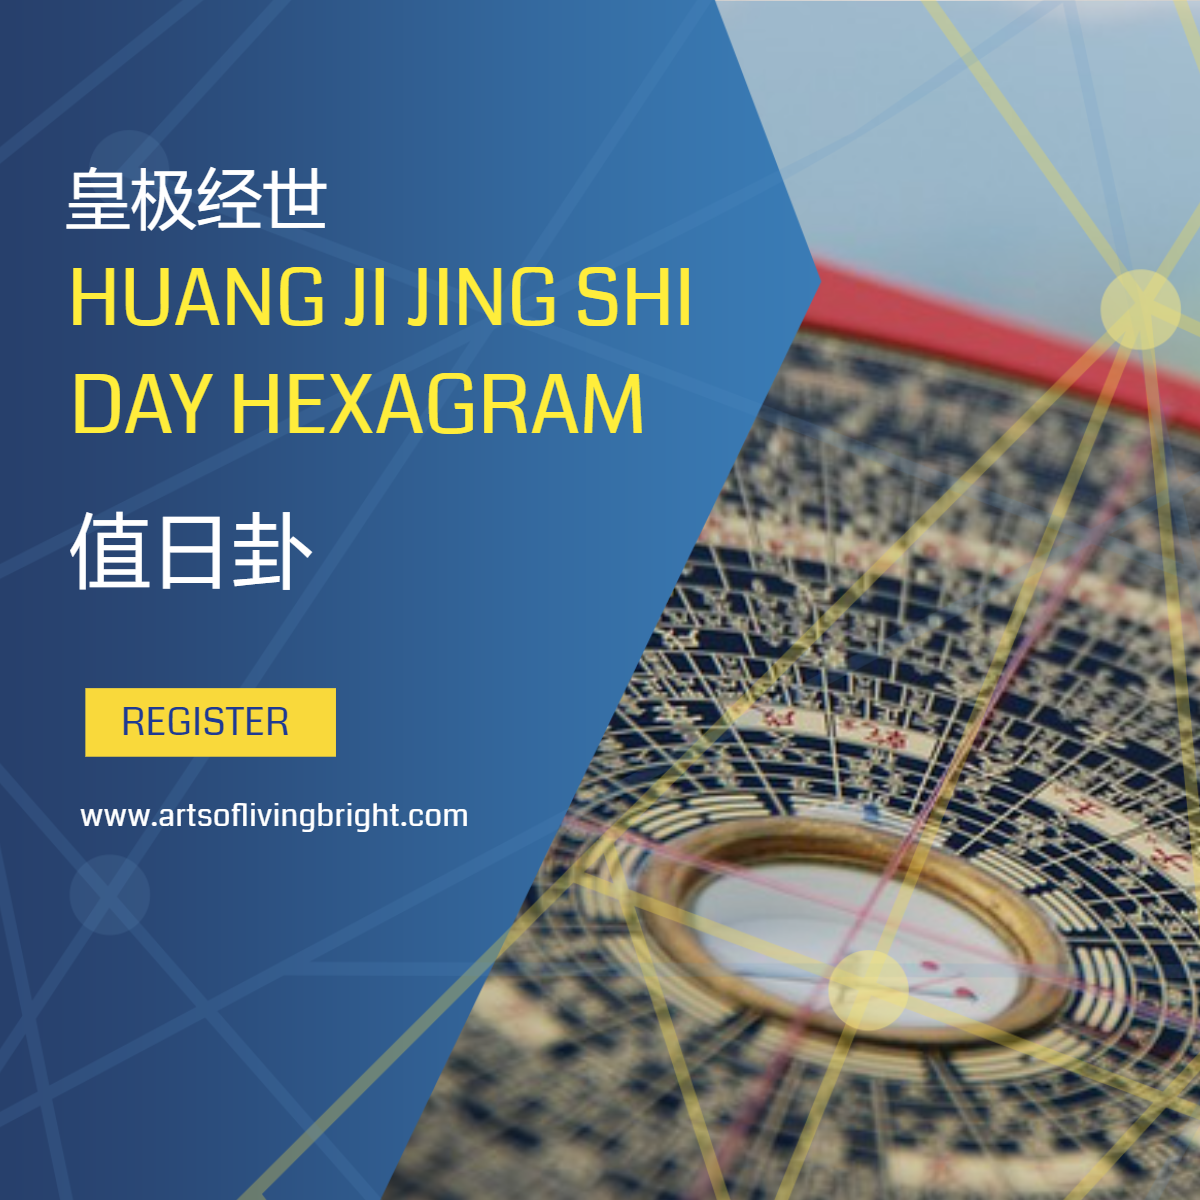 Huang Ji Jing Shi Day Hexagram